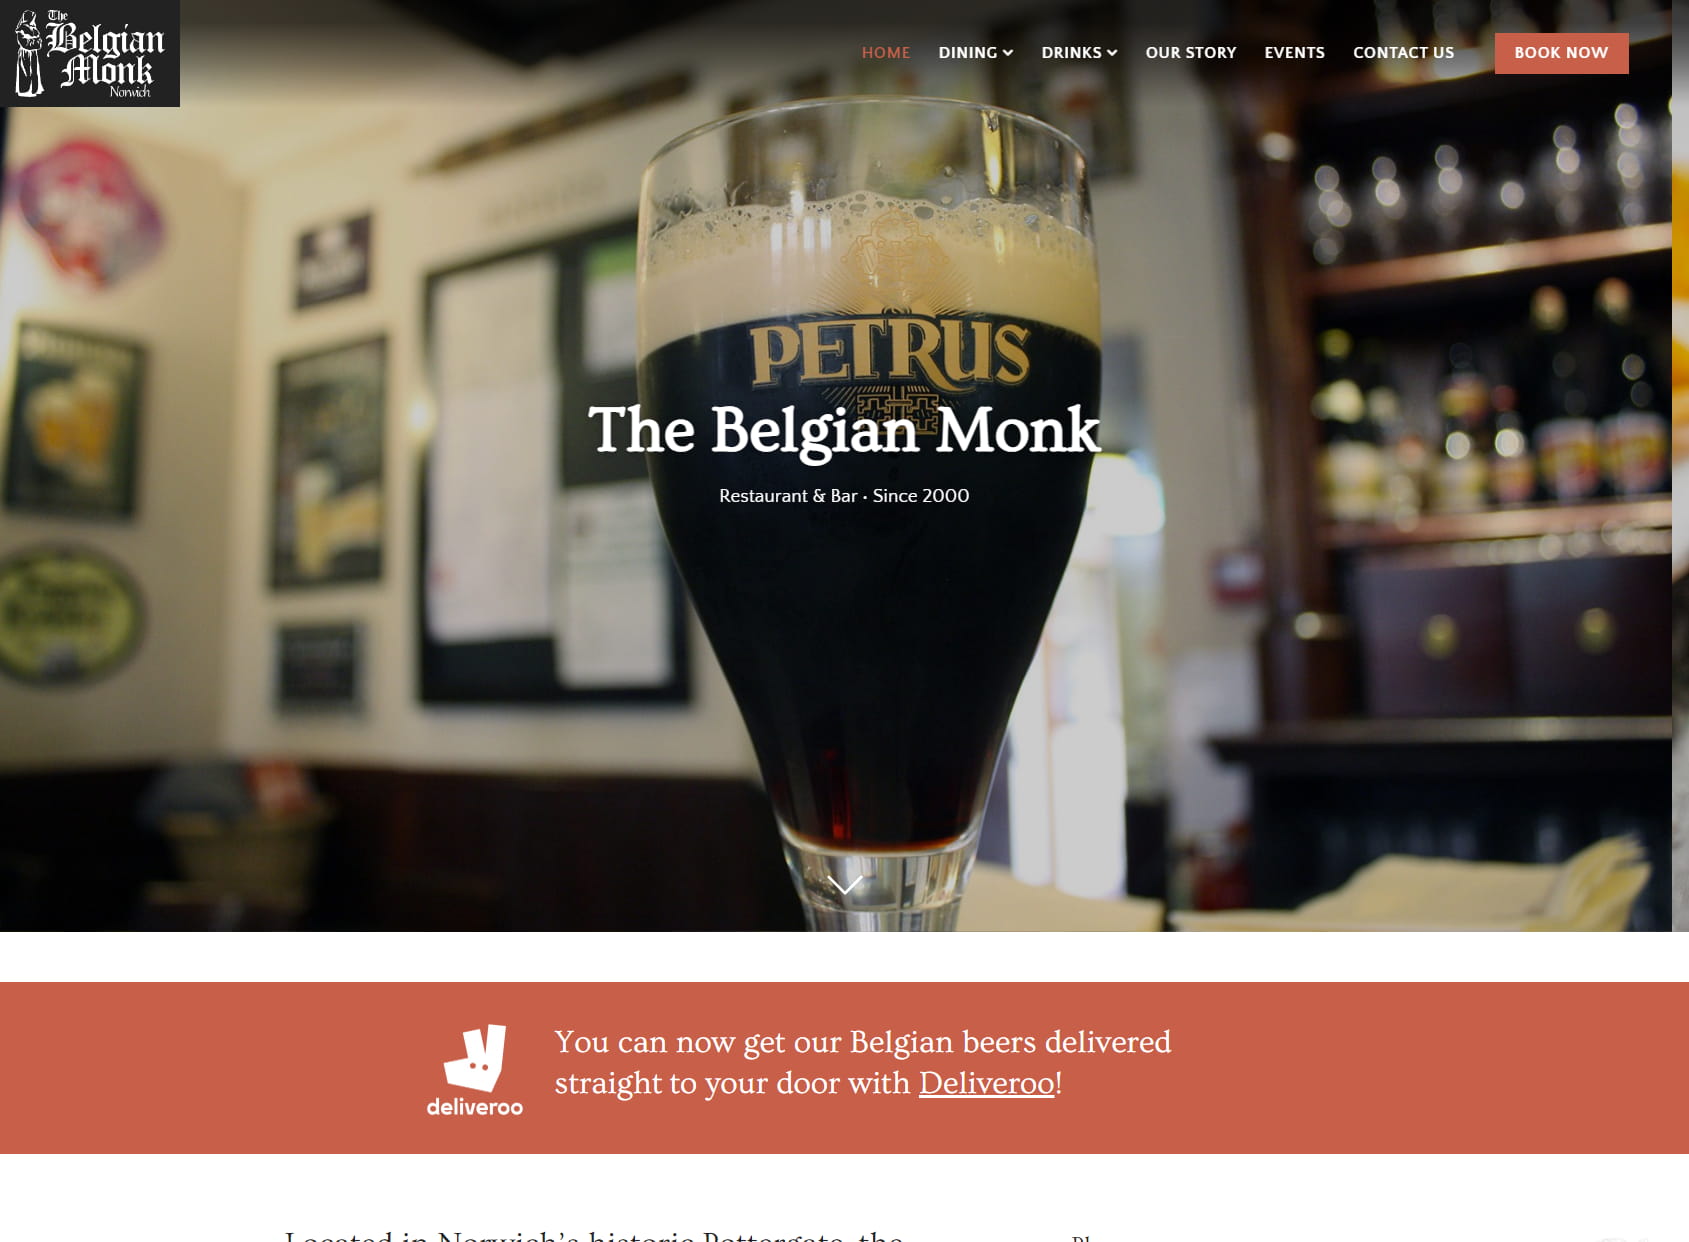 Belgian Monk